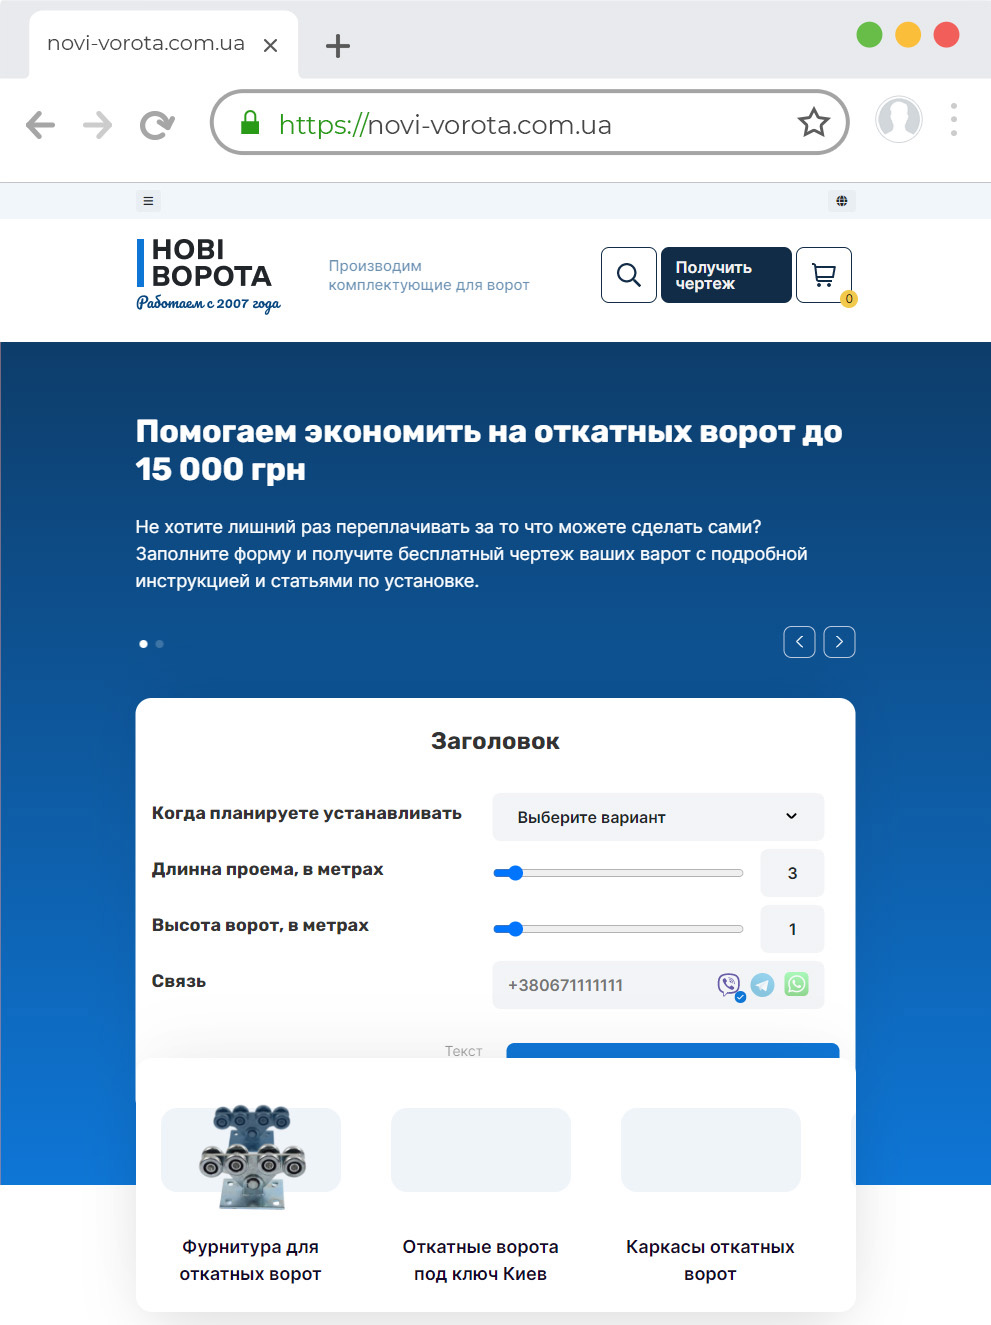 Редизайн сайту та доопрацювання функціоналу novi-vorota